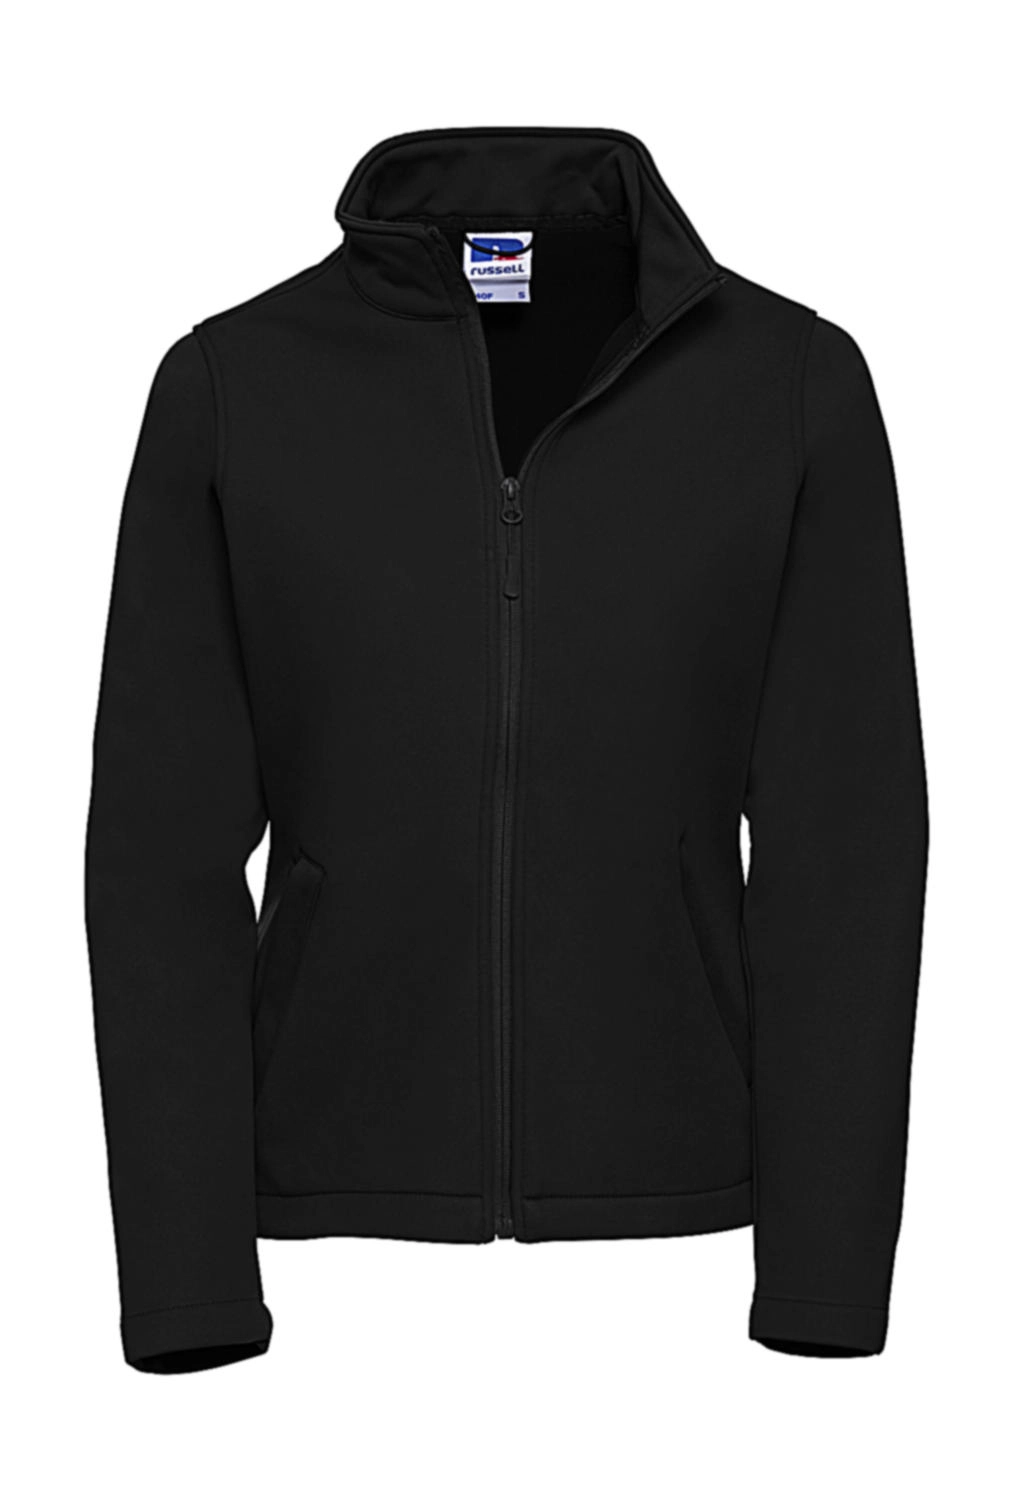 Ladies` Smart Softshell Jacket zum Besticken und Bedrucken in der Farbe Black mit Ihren Logo, Schriftzug oder Motiv.